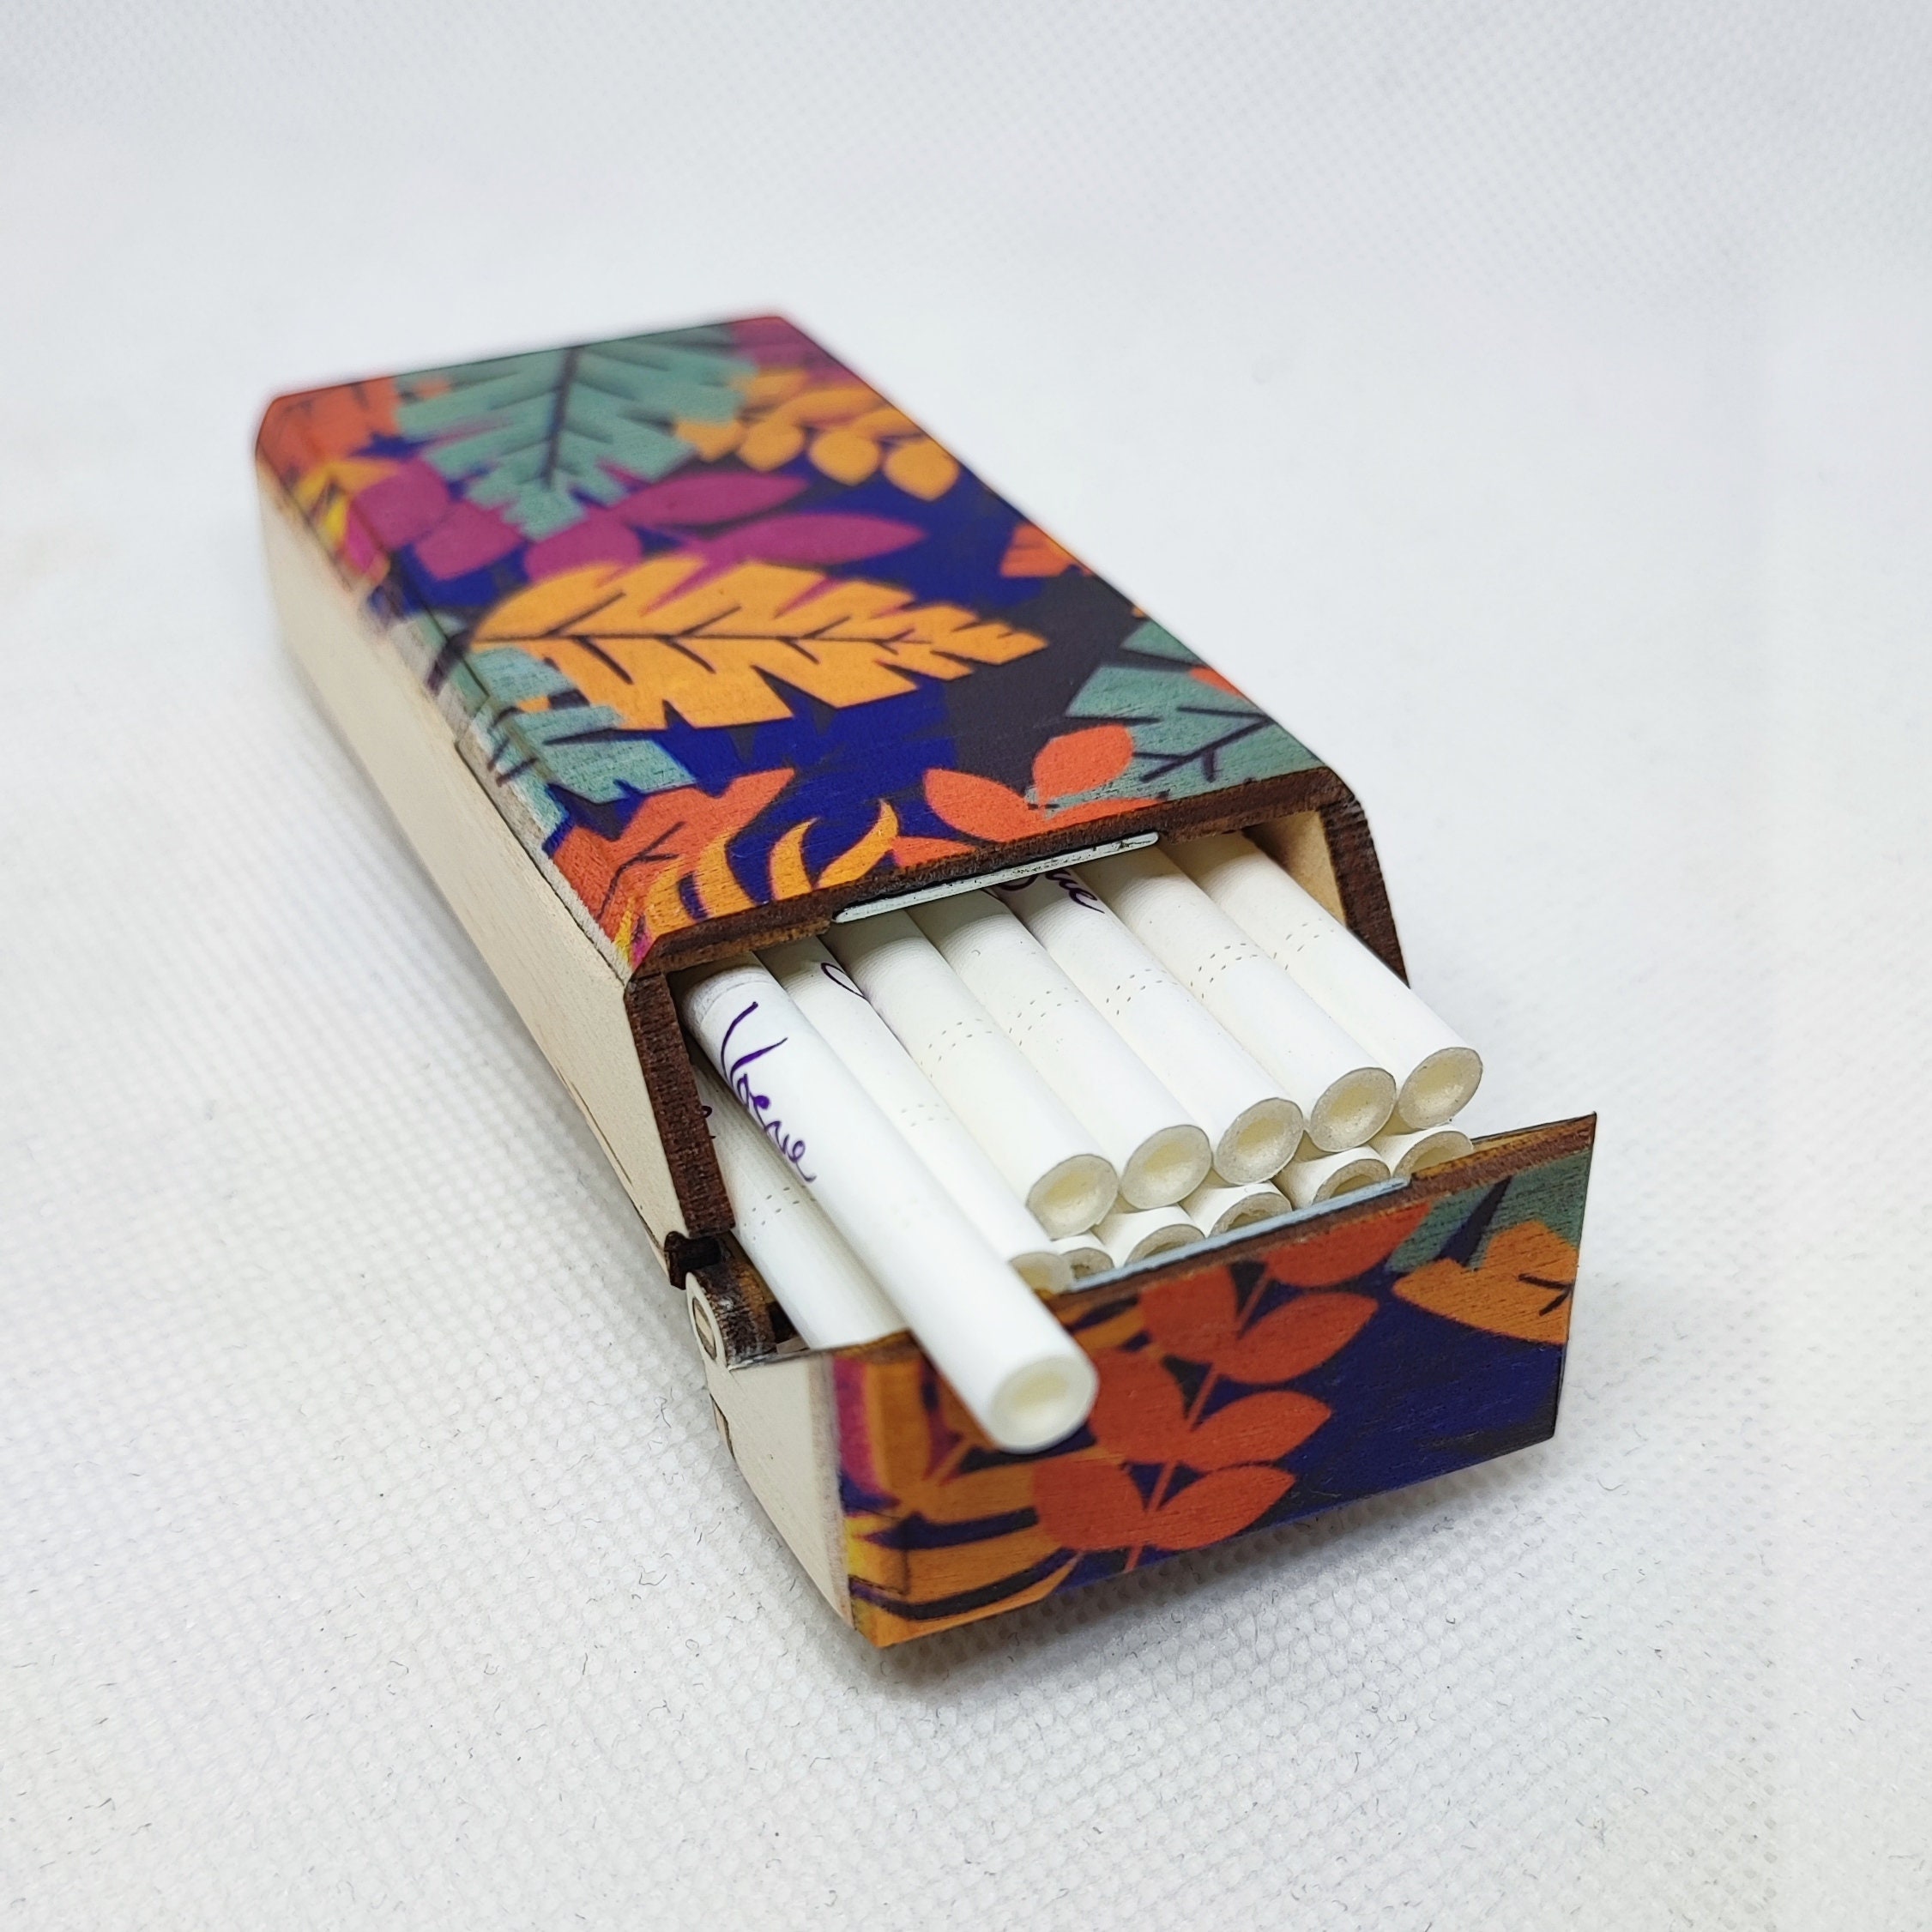 Pitillera para hombres, soporte de caja de cigarrillo de metal con cubierta  de cuero Pu, bolsillo ultradelgado de la caja de tabaco que lleva cigarrillo